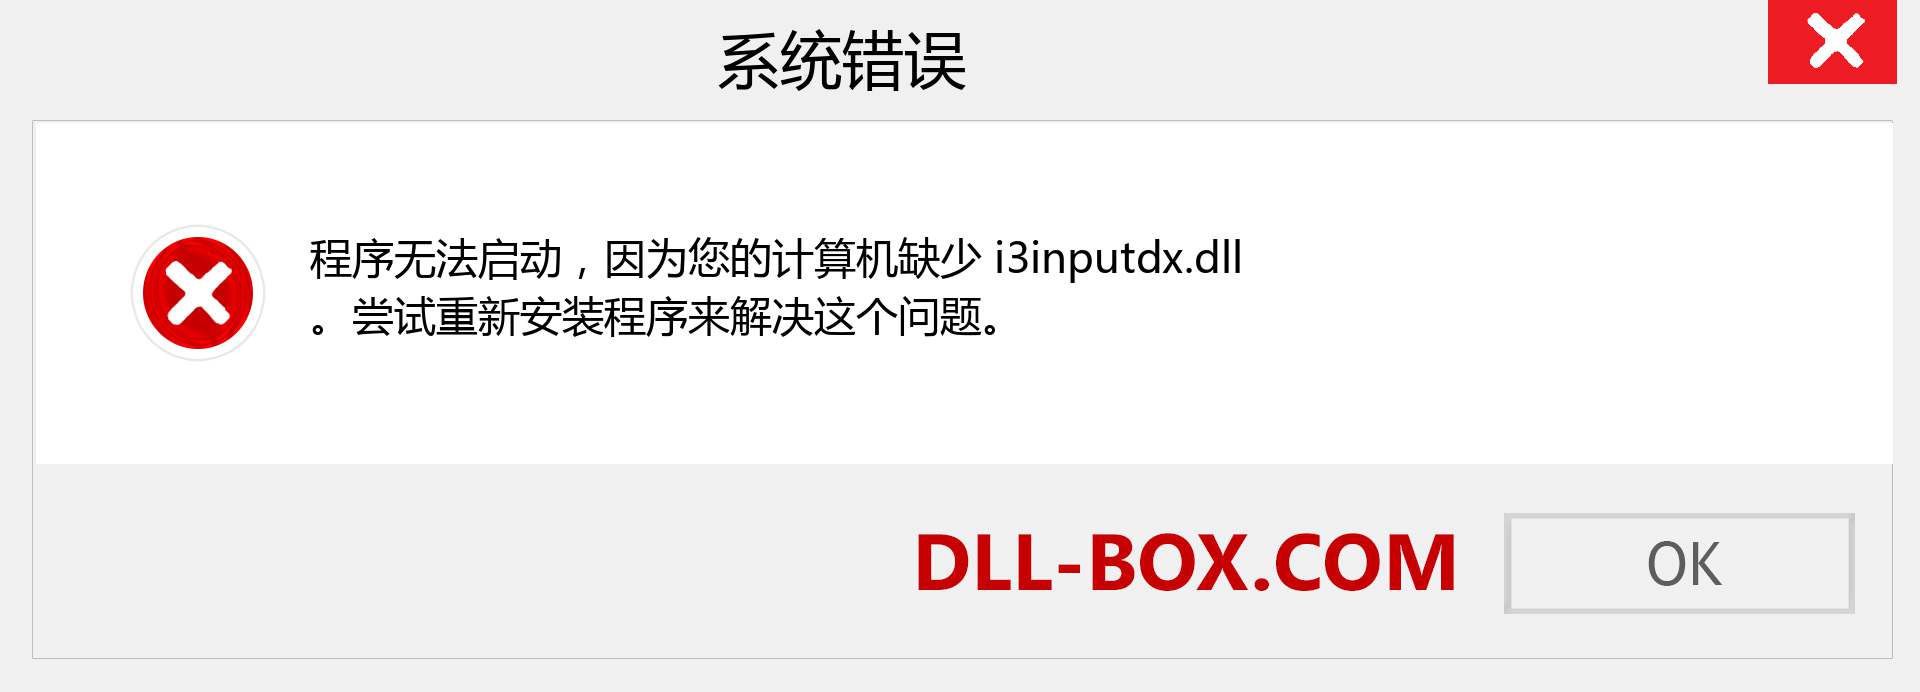 i3inputdx.dll 文件丢失？。 适用于 Windows 7、8、10 的下载 - 修复 Windows、照片、图像上的 i3inputdx dll 丢失错误